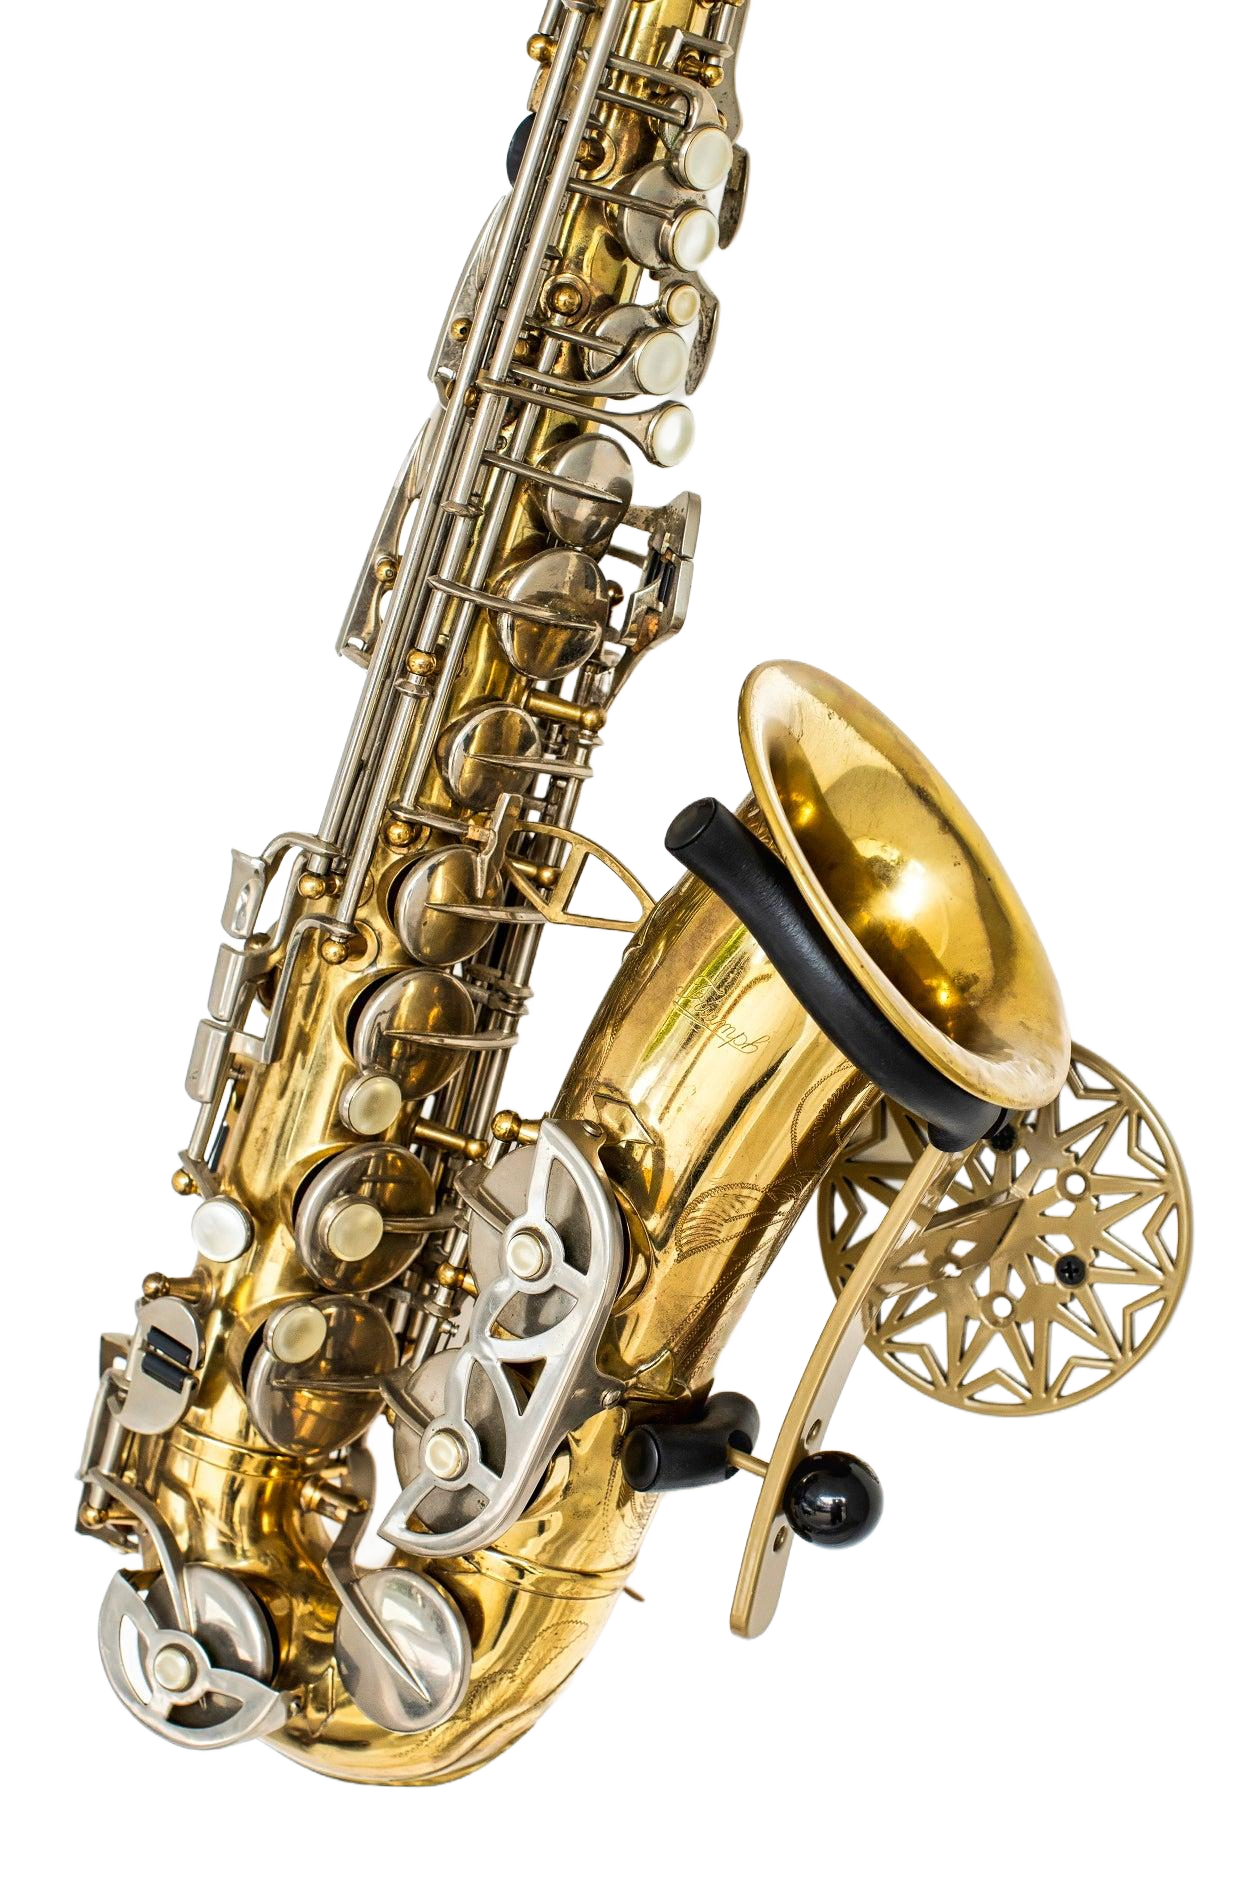 samba gold alto saxophone wallmount product photo Locoparasaxo 1